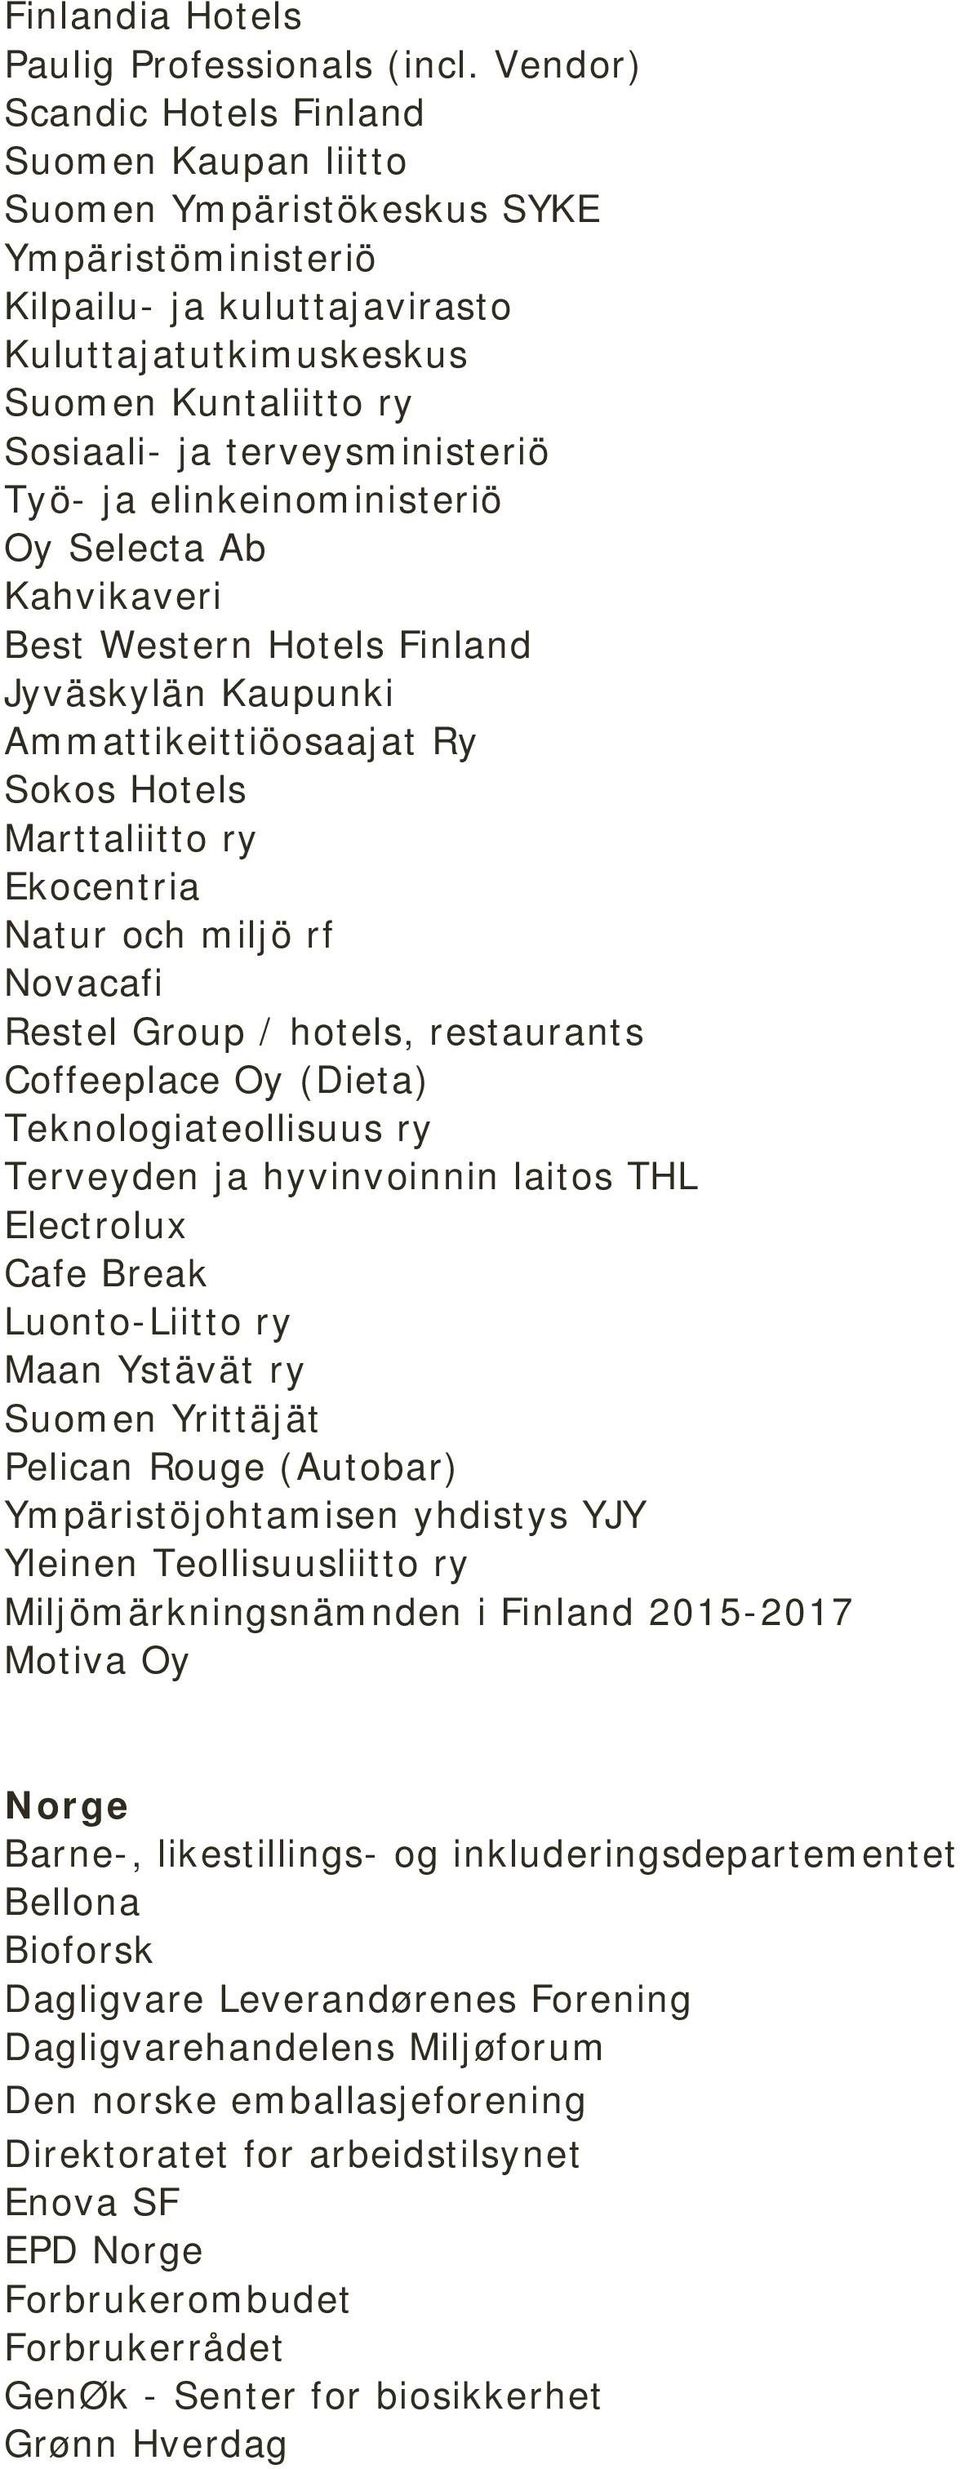 terveysministeriö Työ- ja elinkeinoministeriö Oy Selecta Ab Kahvikaveri Best Western Hotels Finland Jyväskylän Kaupunki Ammattikeittiöosaajat Ry Sokos Hotels Marttaliitto ry Ekocentria Natur och